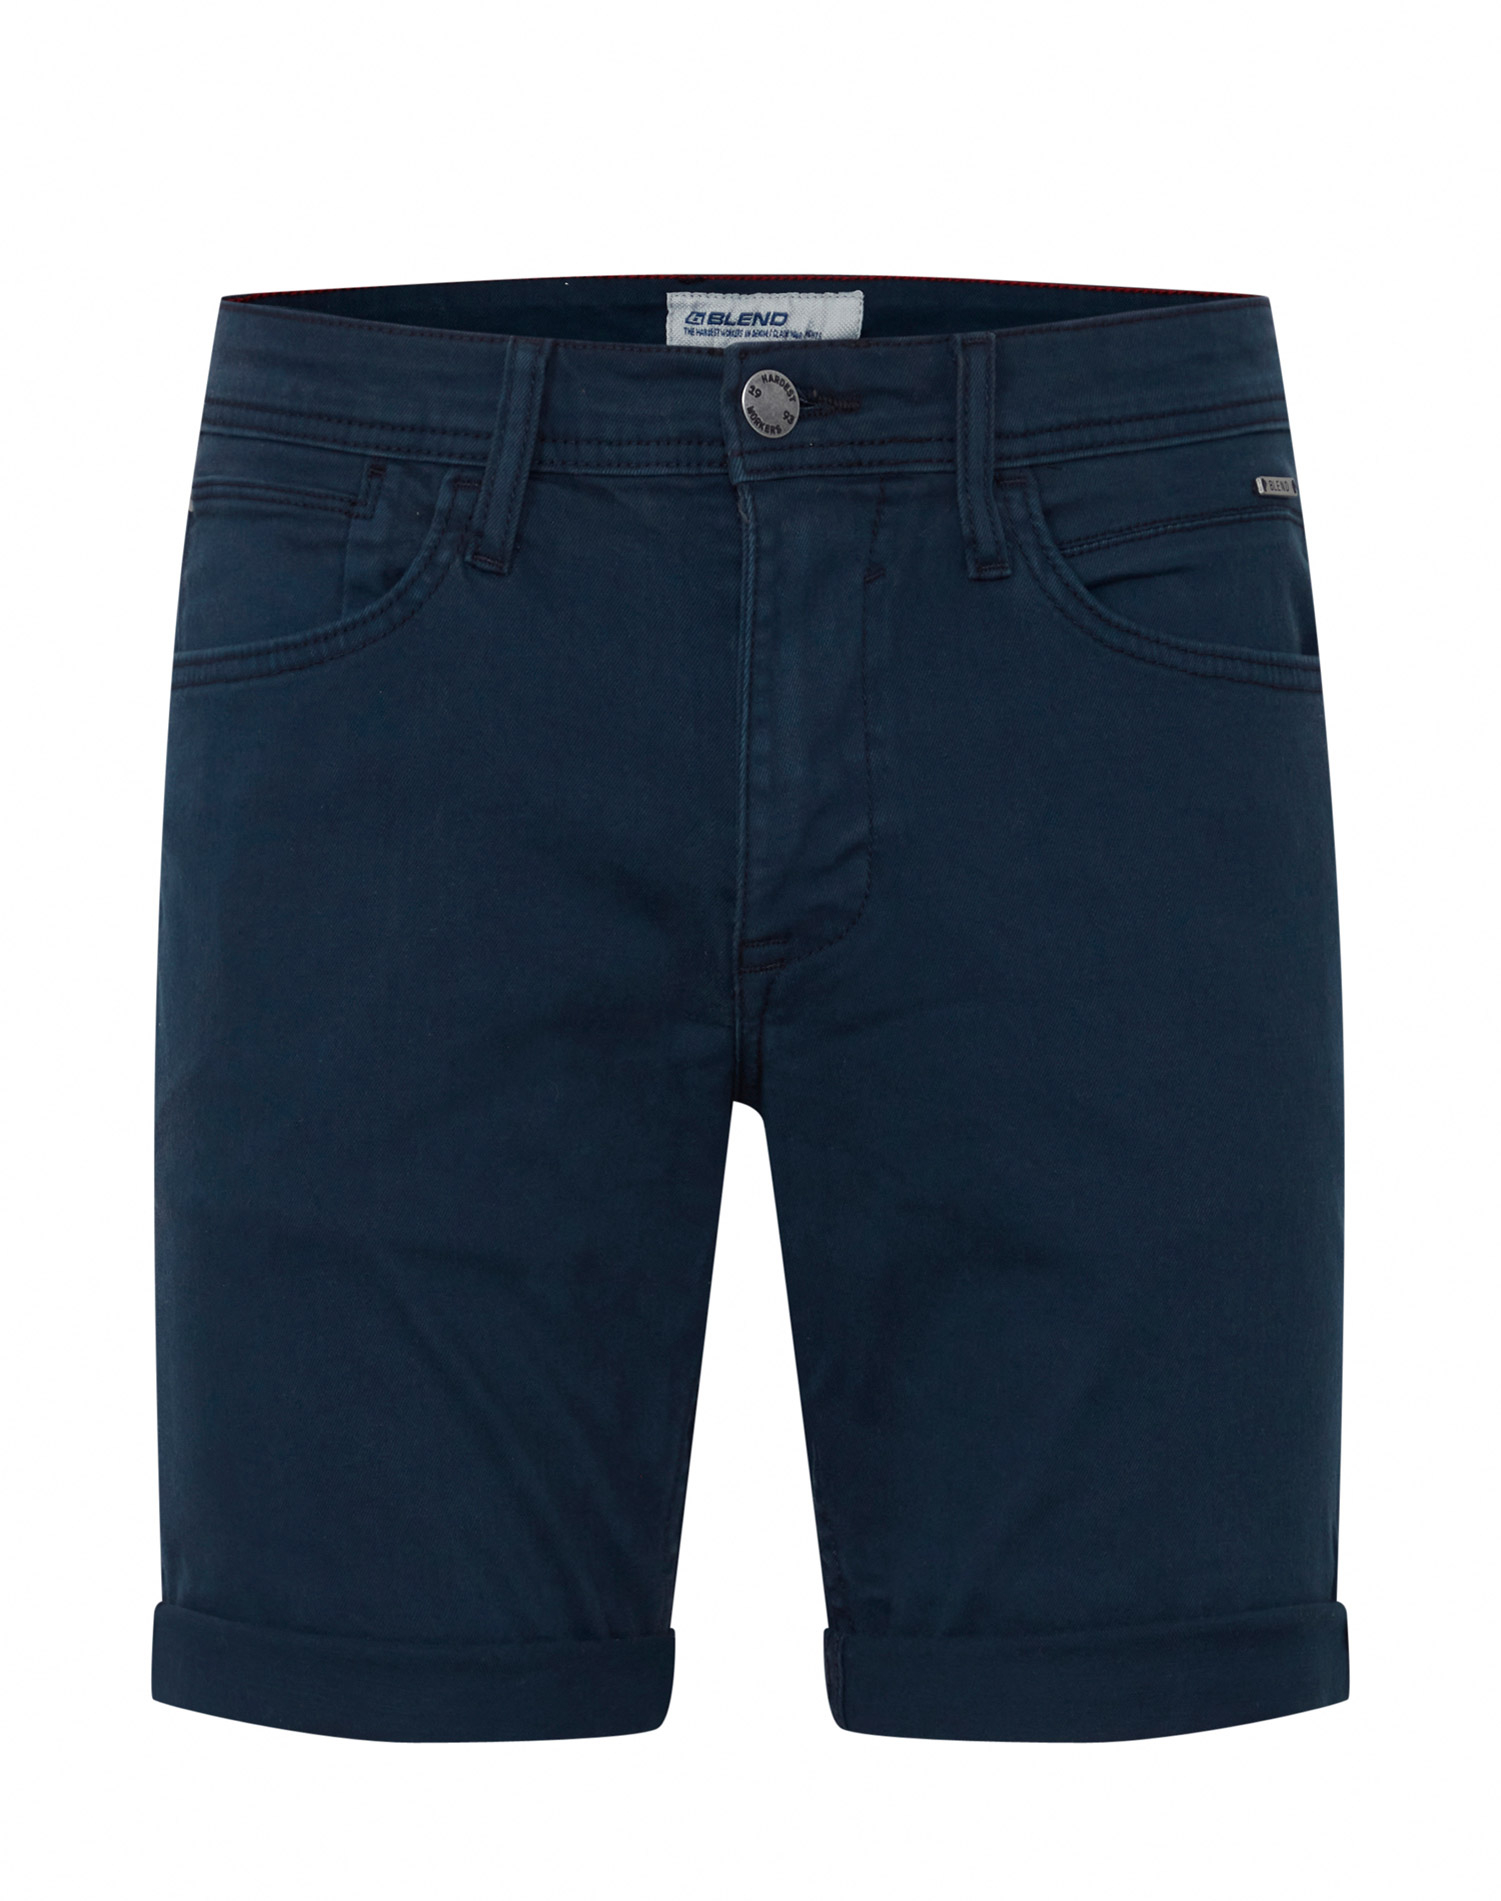 Blend shorts de hombre 20713333/194024 azul